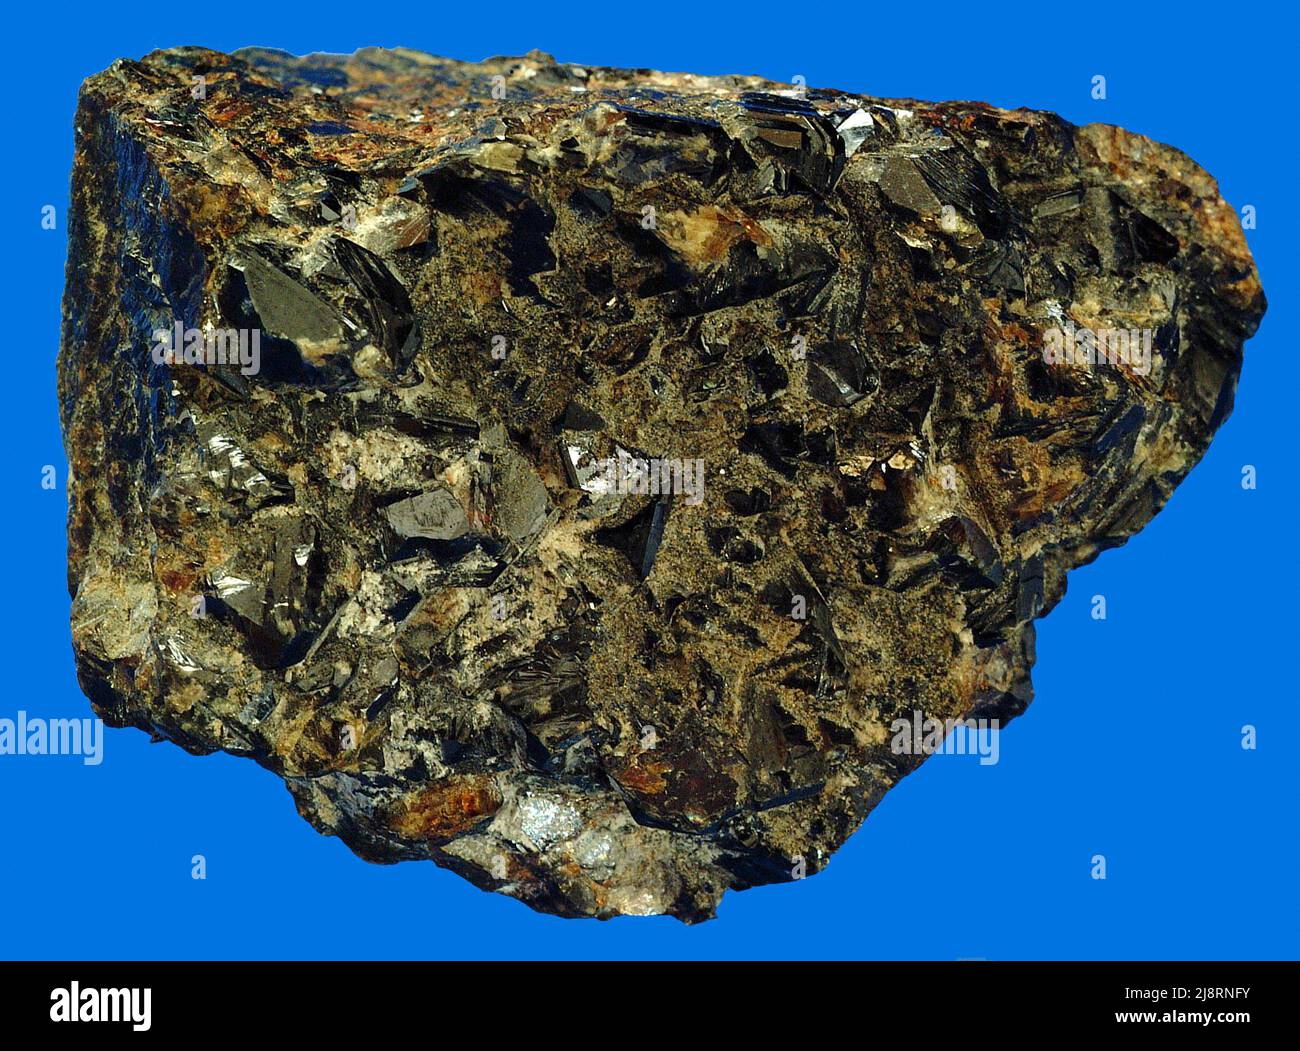 Sphalerit aus der Nähe von Joplin, Missouri. Diese Probe enthält braun-gelben Sphalerit. Sphalerit hat Zusammensetzung (Zn,Fe)S (Zinkeisensulfid). Sie hat typischerweise einen schönen, unnachsichlichen Glanz, der manchmal als „harzig“ beschrieben wird. Er kann aufgrund seines ungewöhnlich hohen Brechungsindexes funkeln und ein Feuer zeigen, das größer ist als der von Diamanten. Transparenter Sphalerit wurde für Edelsteine geschnitten, aber seine Spaltung und Weichheit beschränken seine Verwendung als Edelstein nur auf Sammler. Sphalerit ist ein Prinzip oder Mineral aus Zink. Dieses etwa 8 cm breite Exemplar stammt aus dem Blei-Zink-Bergbaugebiet in der Nähe von Joplin, Missour Stockfoto